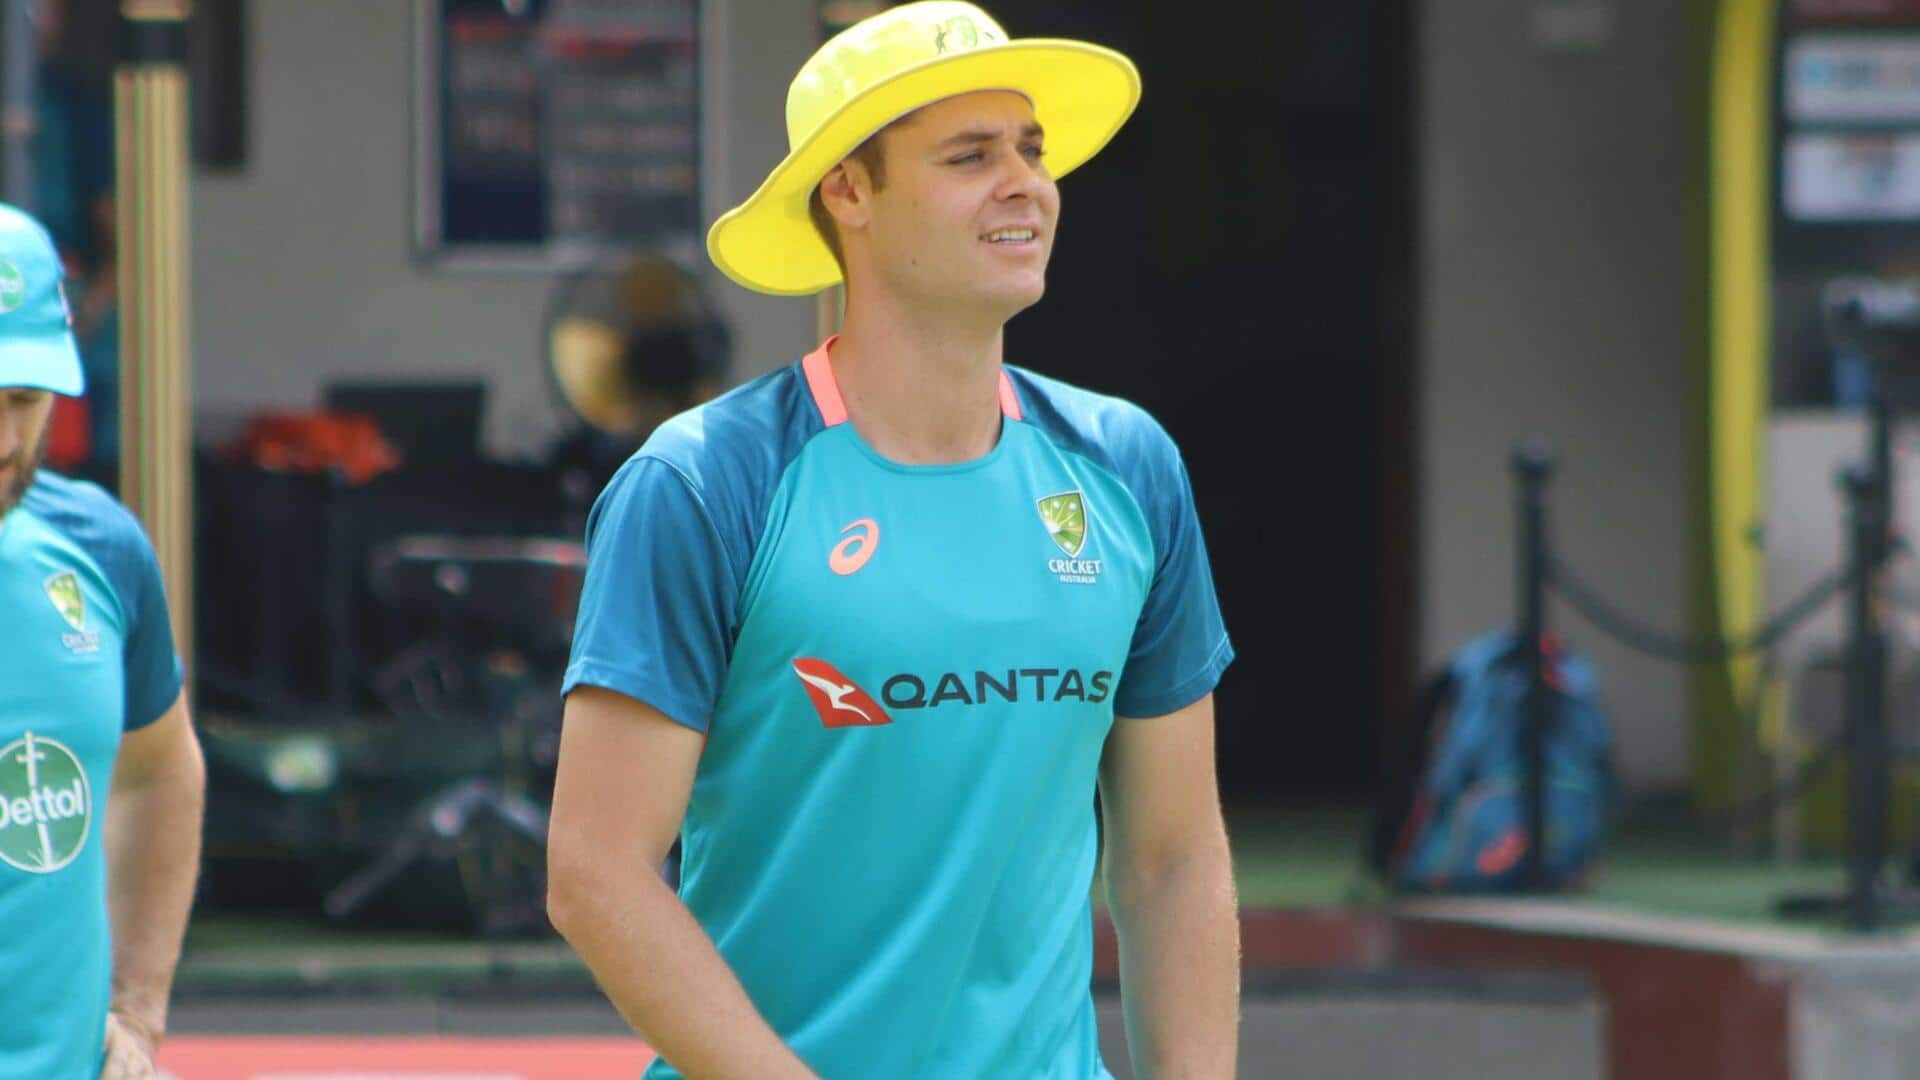 भारत बनाम ऑस्ट्रेलिया: तेज गेंदबाज स्पेंसर जॉनसन ने किया वनडे डेब्यू, जानिए उनके आंकड़े